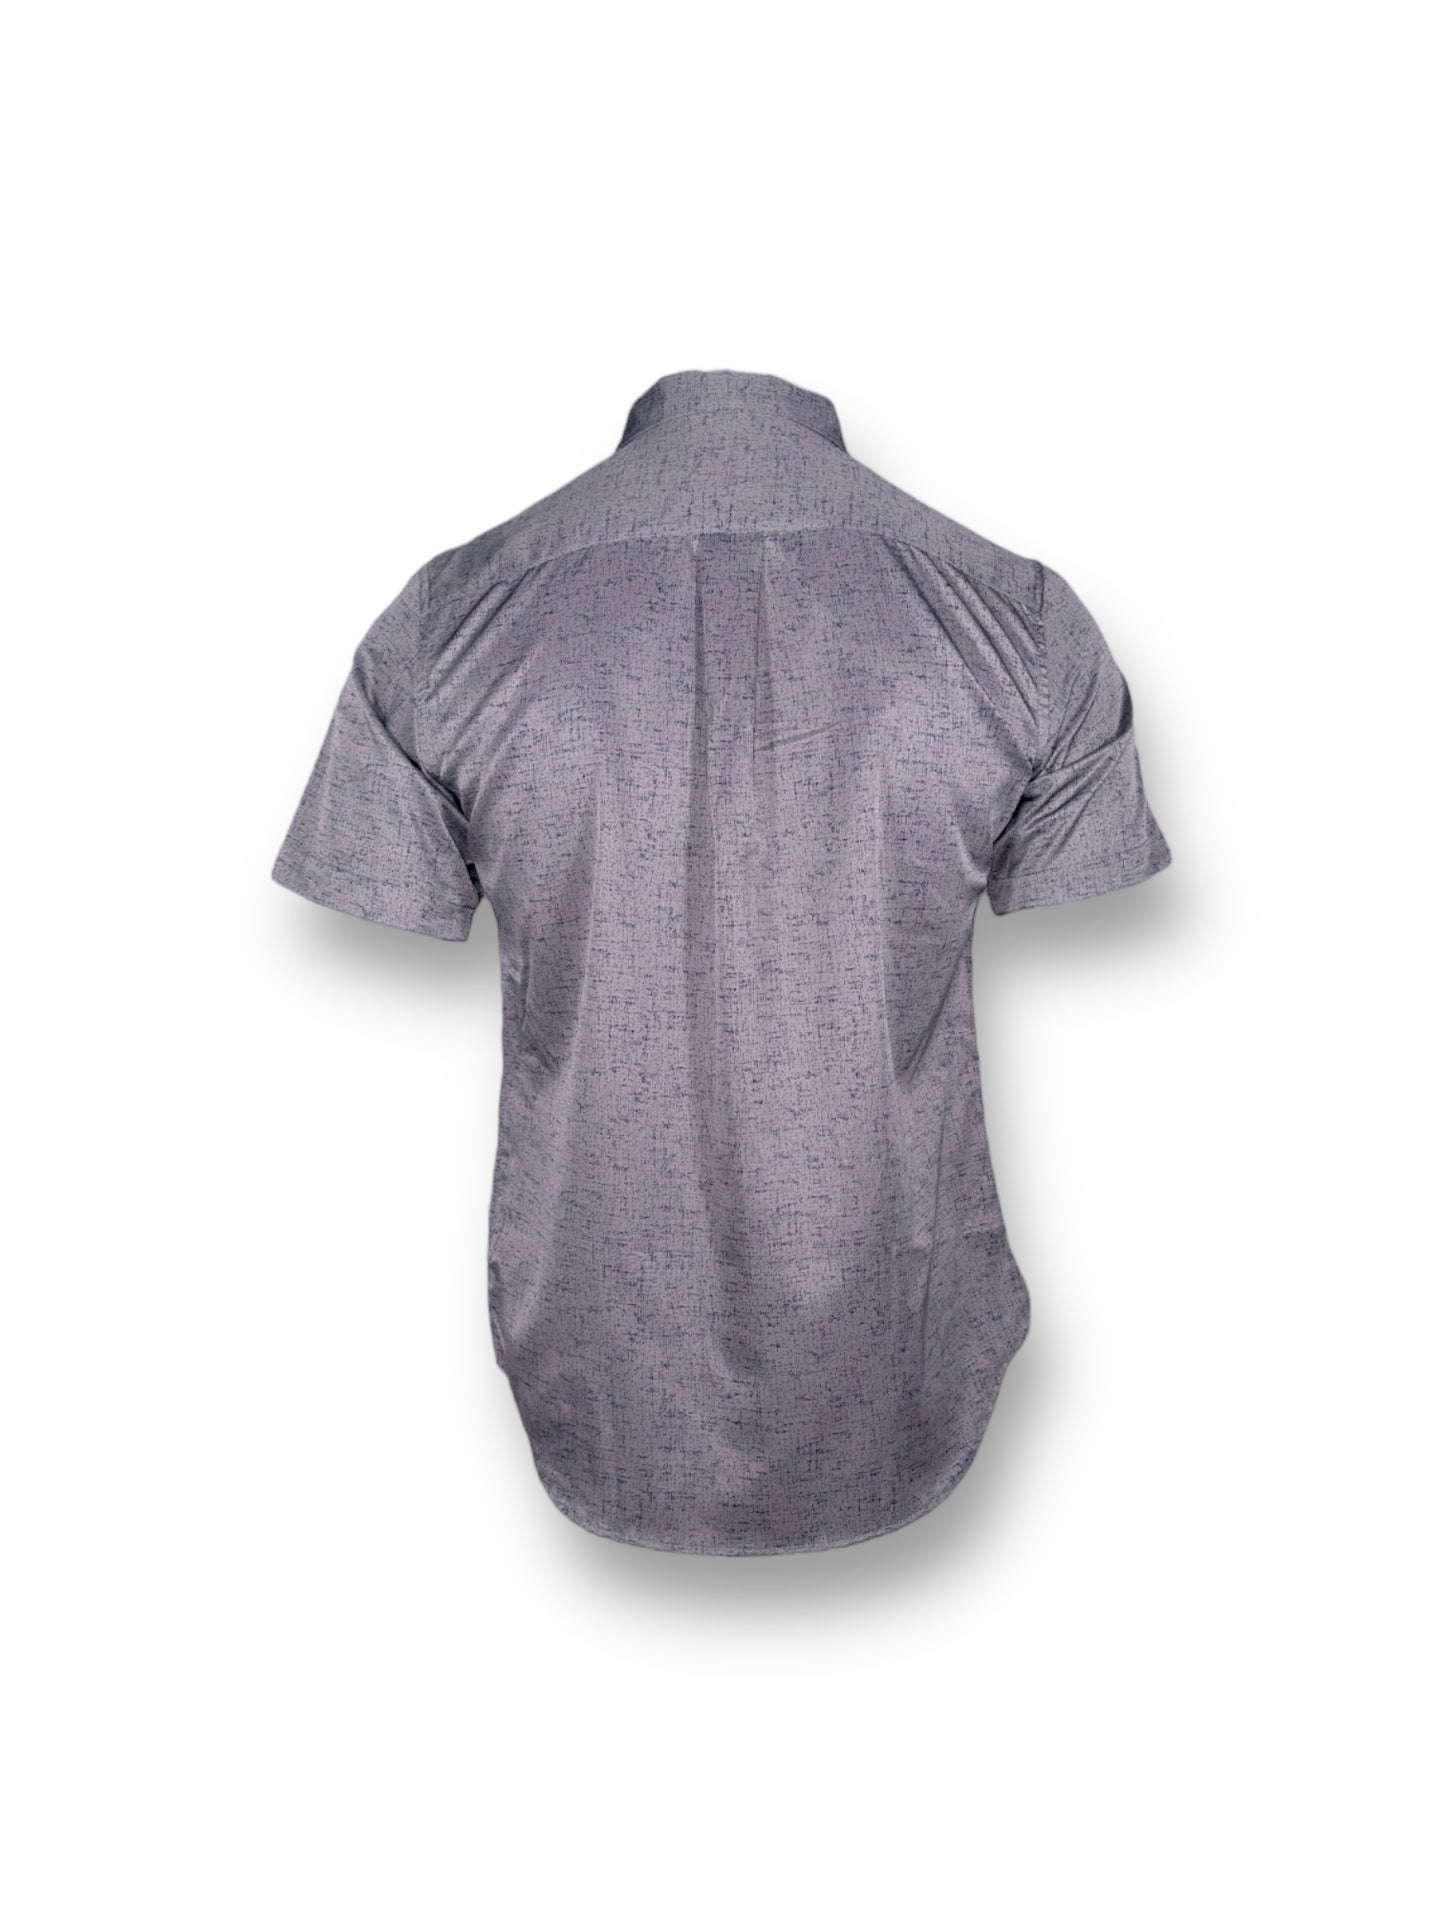 Oxygen gray shirt for men